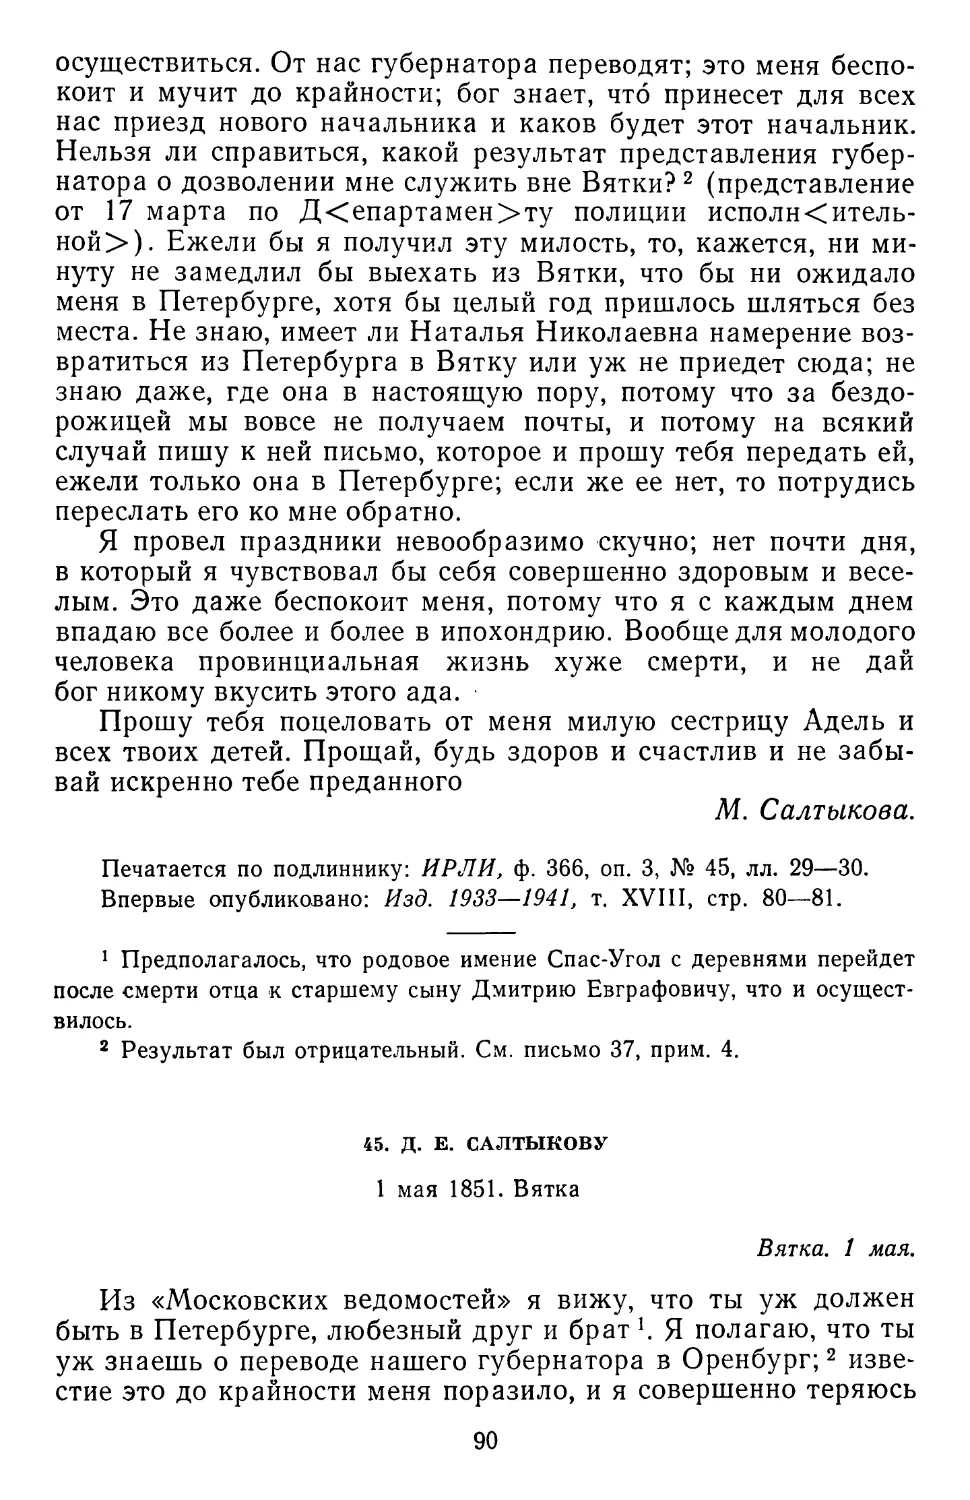 45.Д. Е. Салтыкову. 1 мая 1851. Вятка